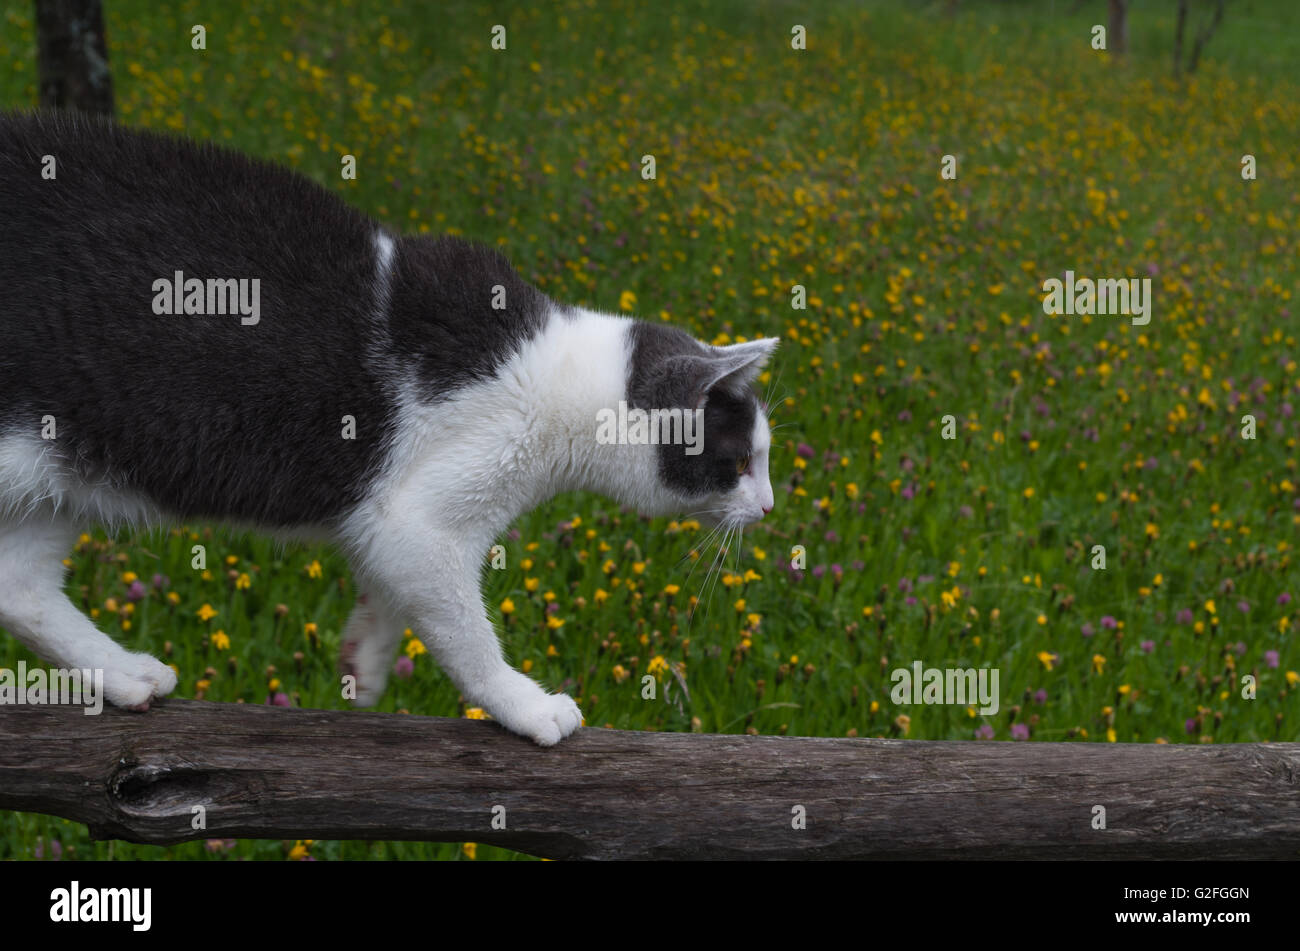 Die Katze balancieren auf einem Holzbalken Stockfotografie - Alamy